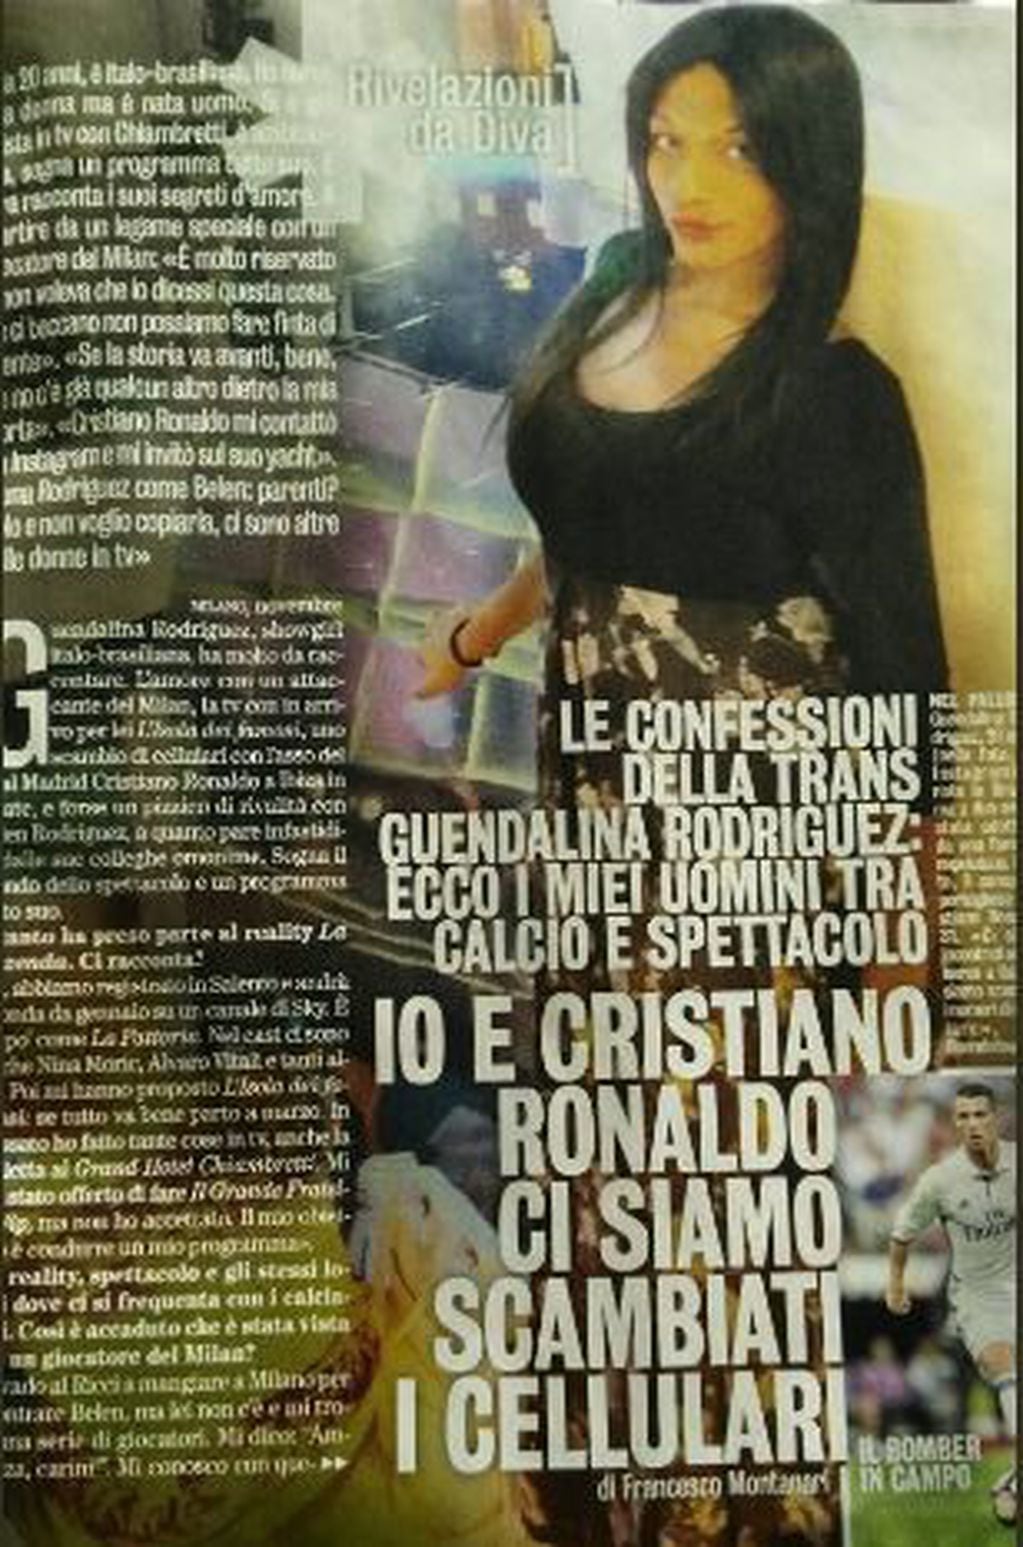 Guendalina Rodriguez también fue vinculada con Cristiano Ronaldo